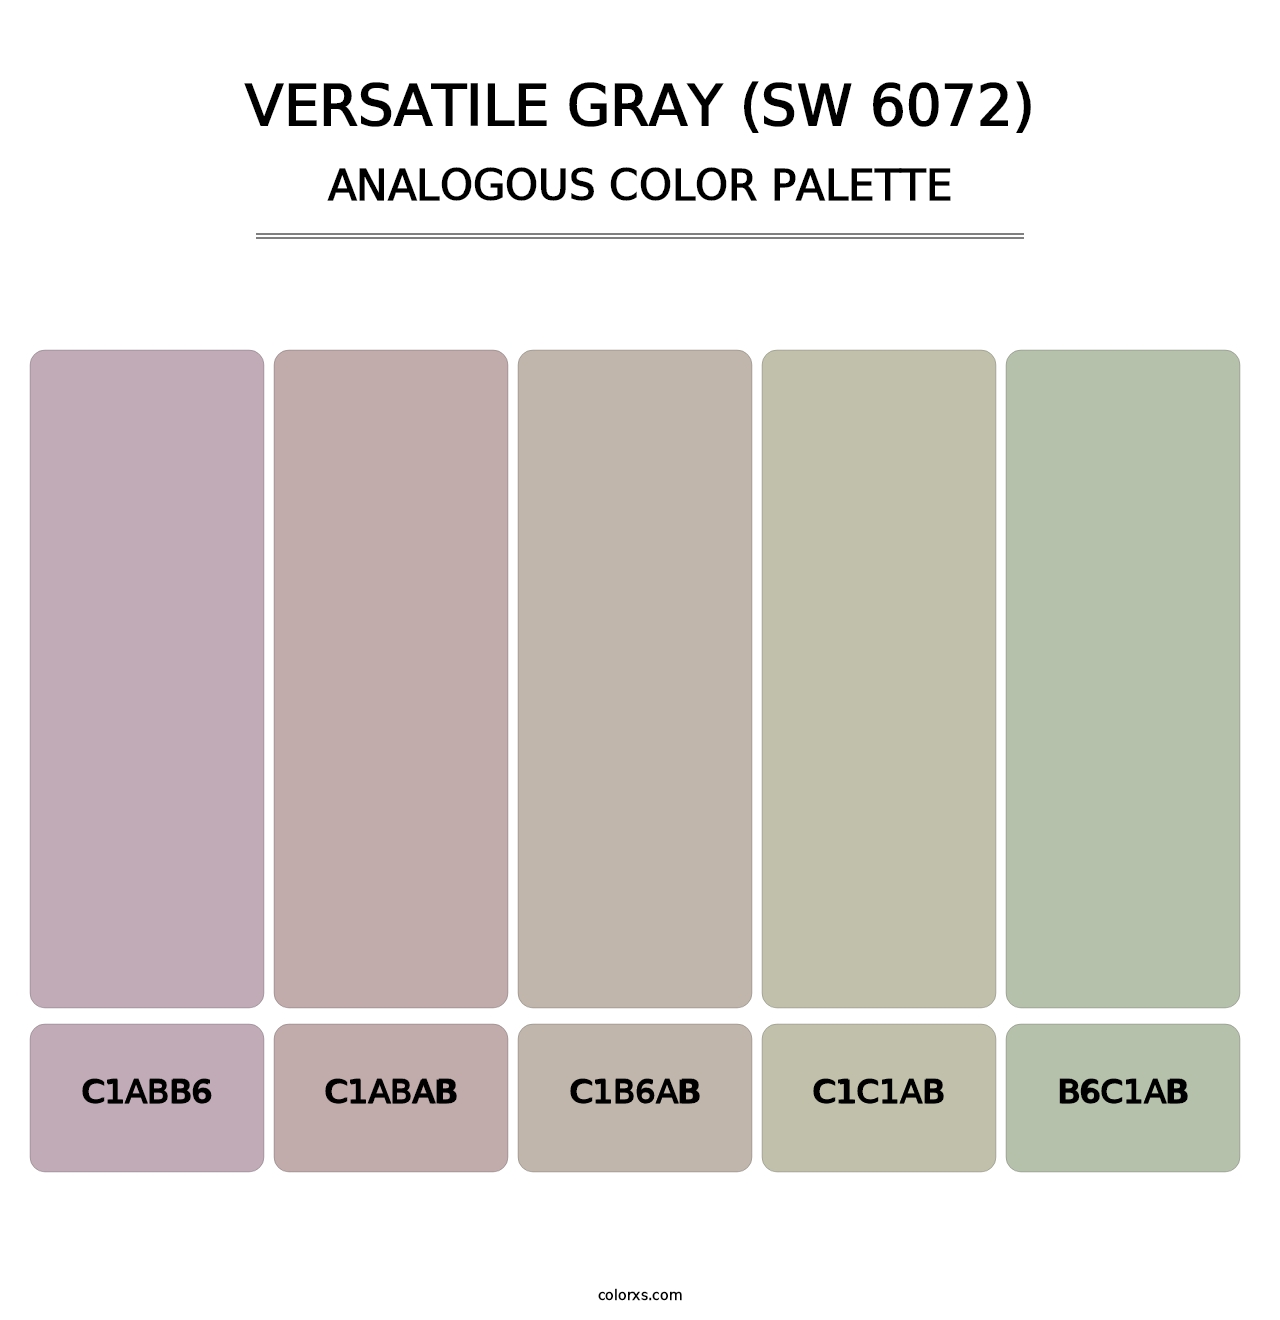 Versatile Gray (SW 6072) - Analogous Color Palette